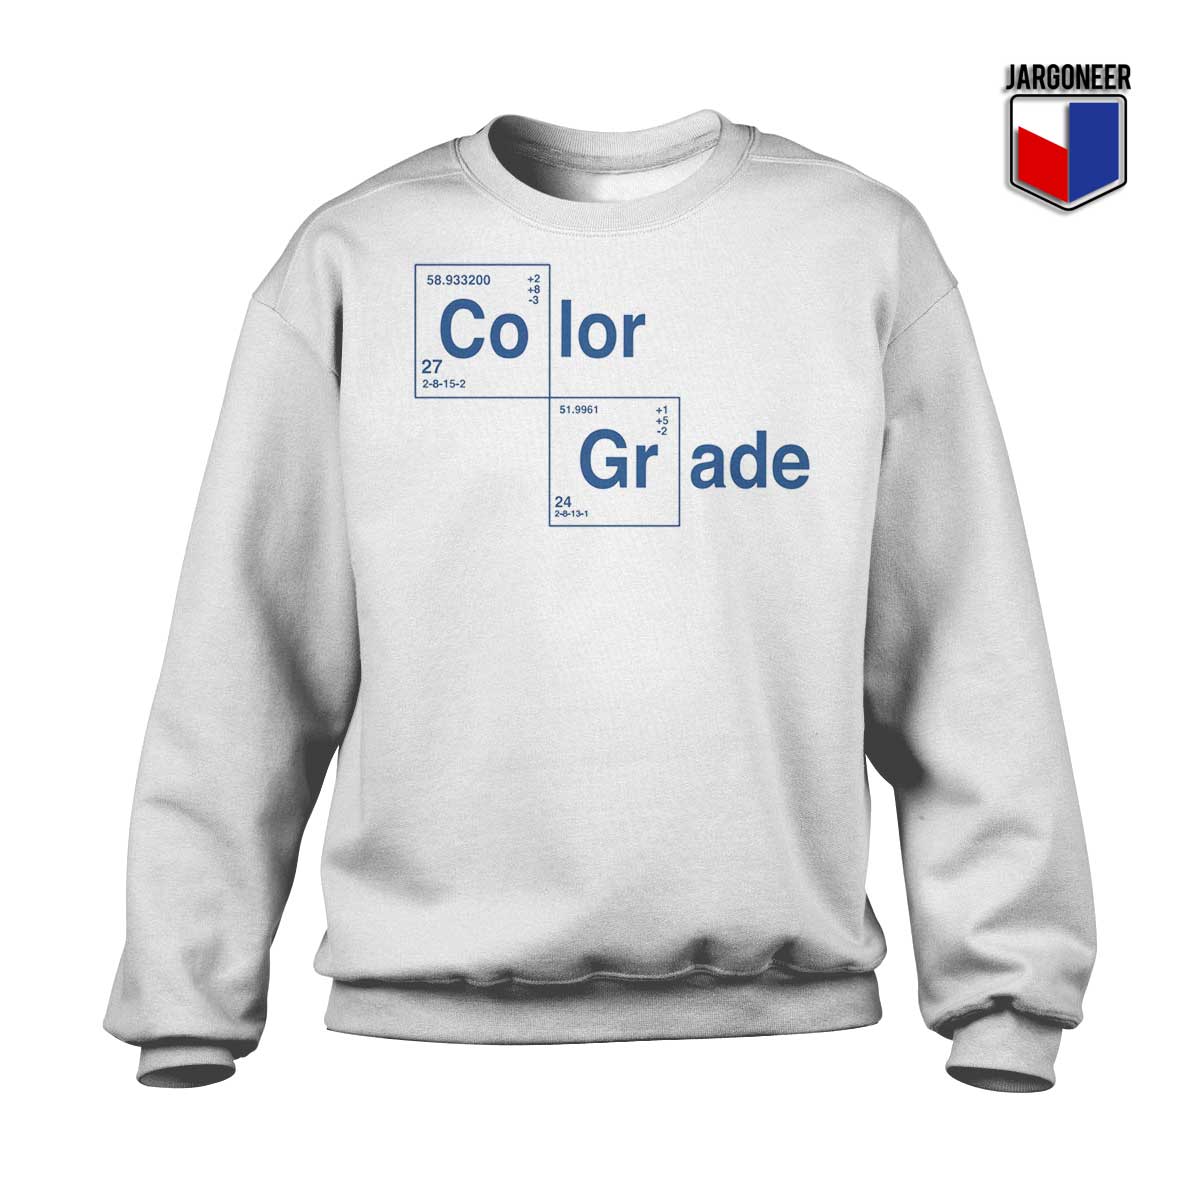 Color Grade Your White Sweatshirt - Shop Unique Graphic Cool Shirt Designs